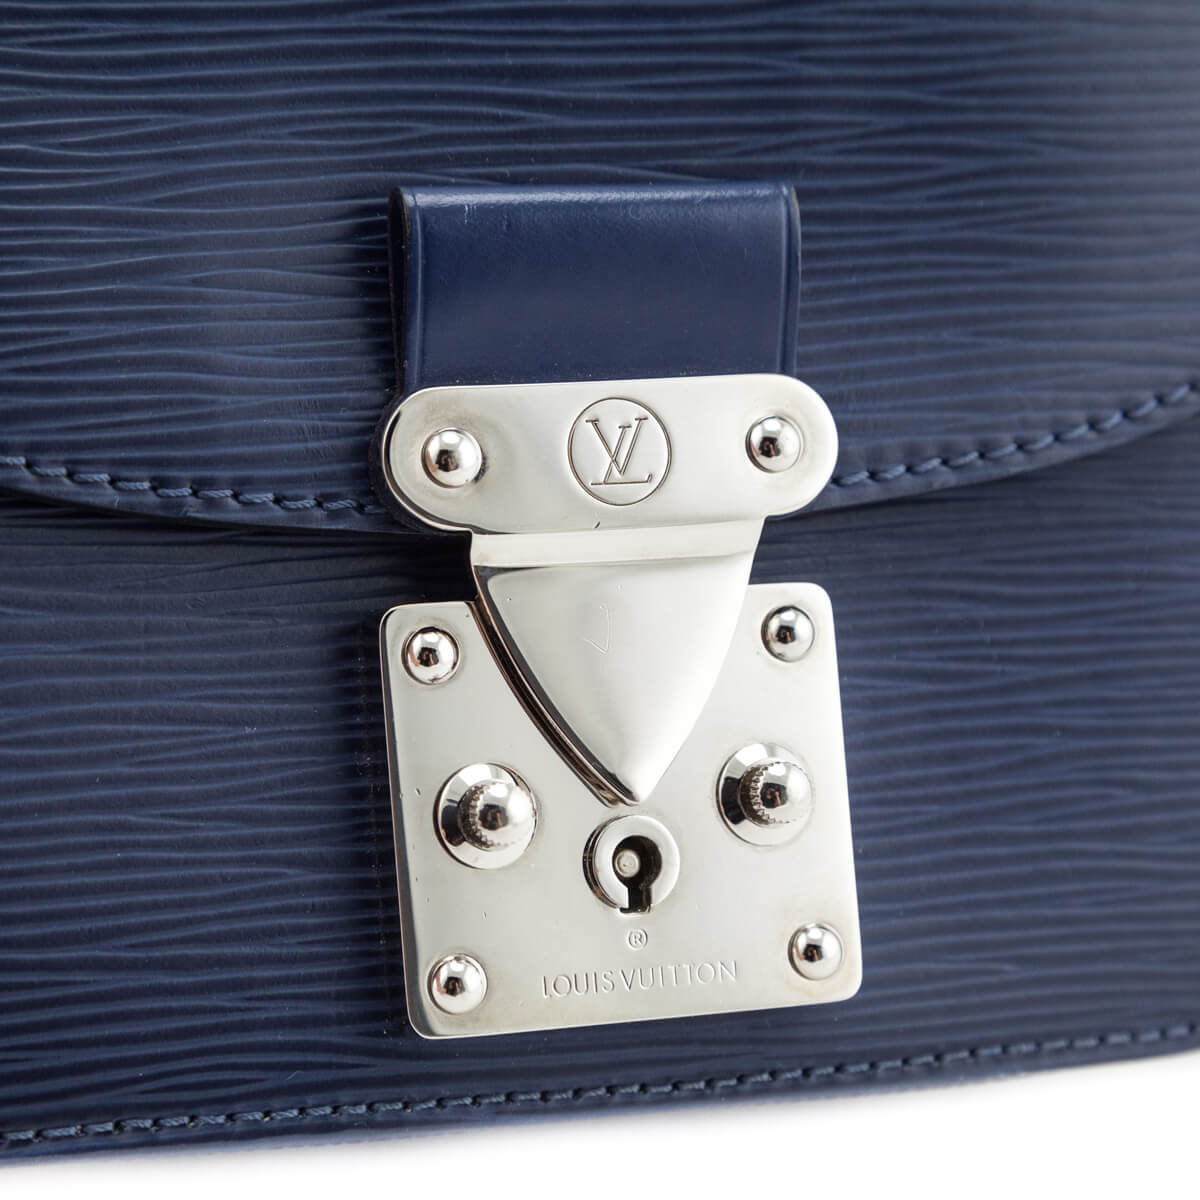 Louis Vuitton Indigo Epi Leather Eden PM Bag at 1stDibs